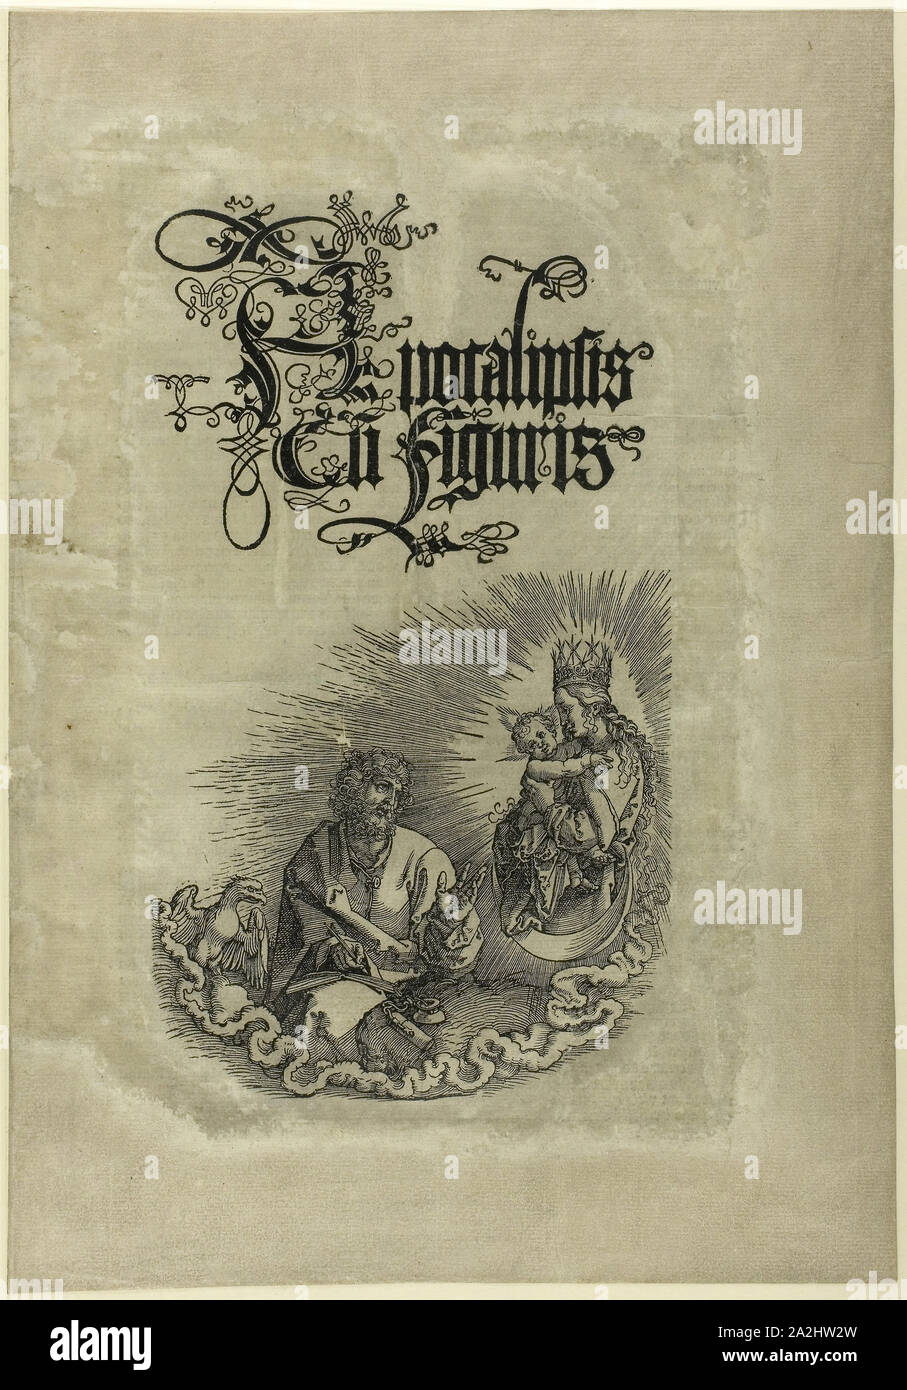 La Vergine che appare a San Giovanni, dall'Apocalisse, c. 1511, Albrecht Dürer, Tedesco, 1471-1528, Germania, Xilografia in nero su avorio carta vergata scolorito a grigio, 450 x 312 mm Foto Stock